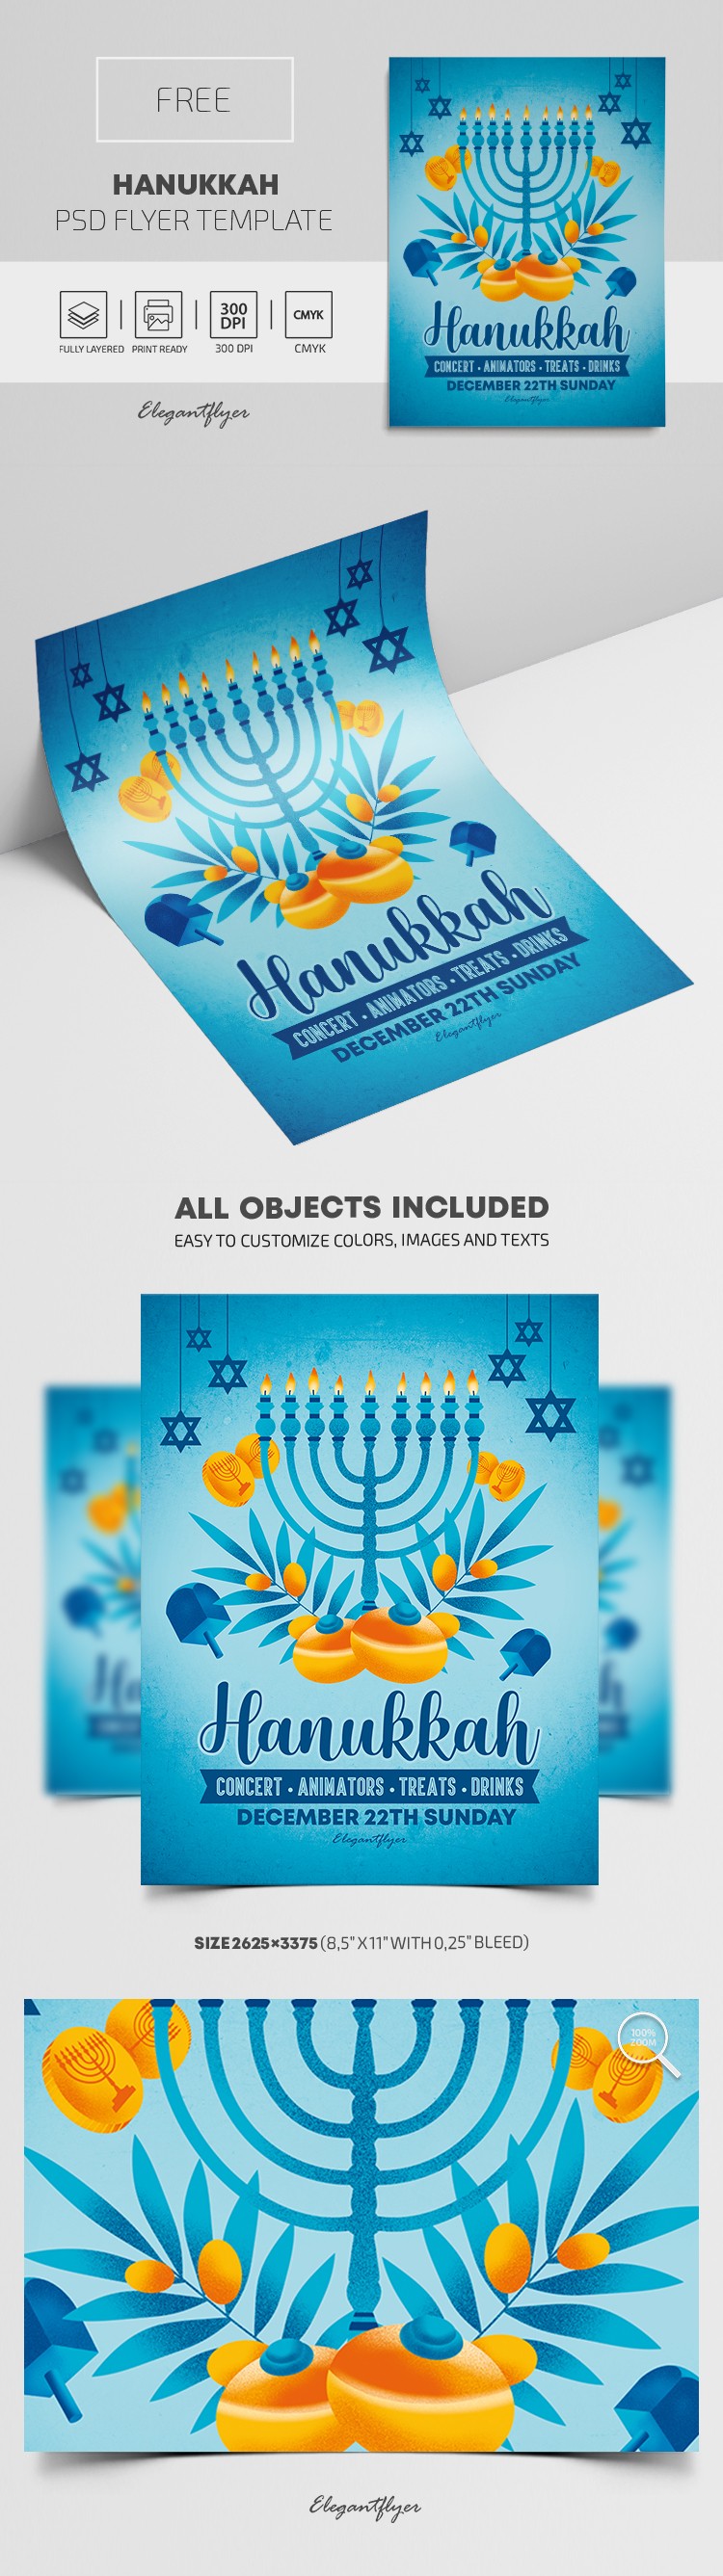 Dépliant de Hanukkah by ElegantFlyer